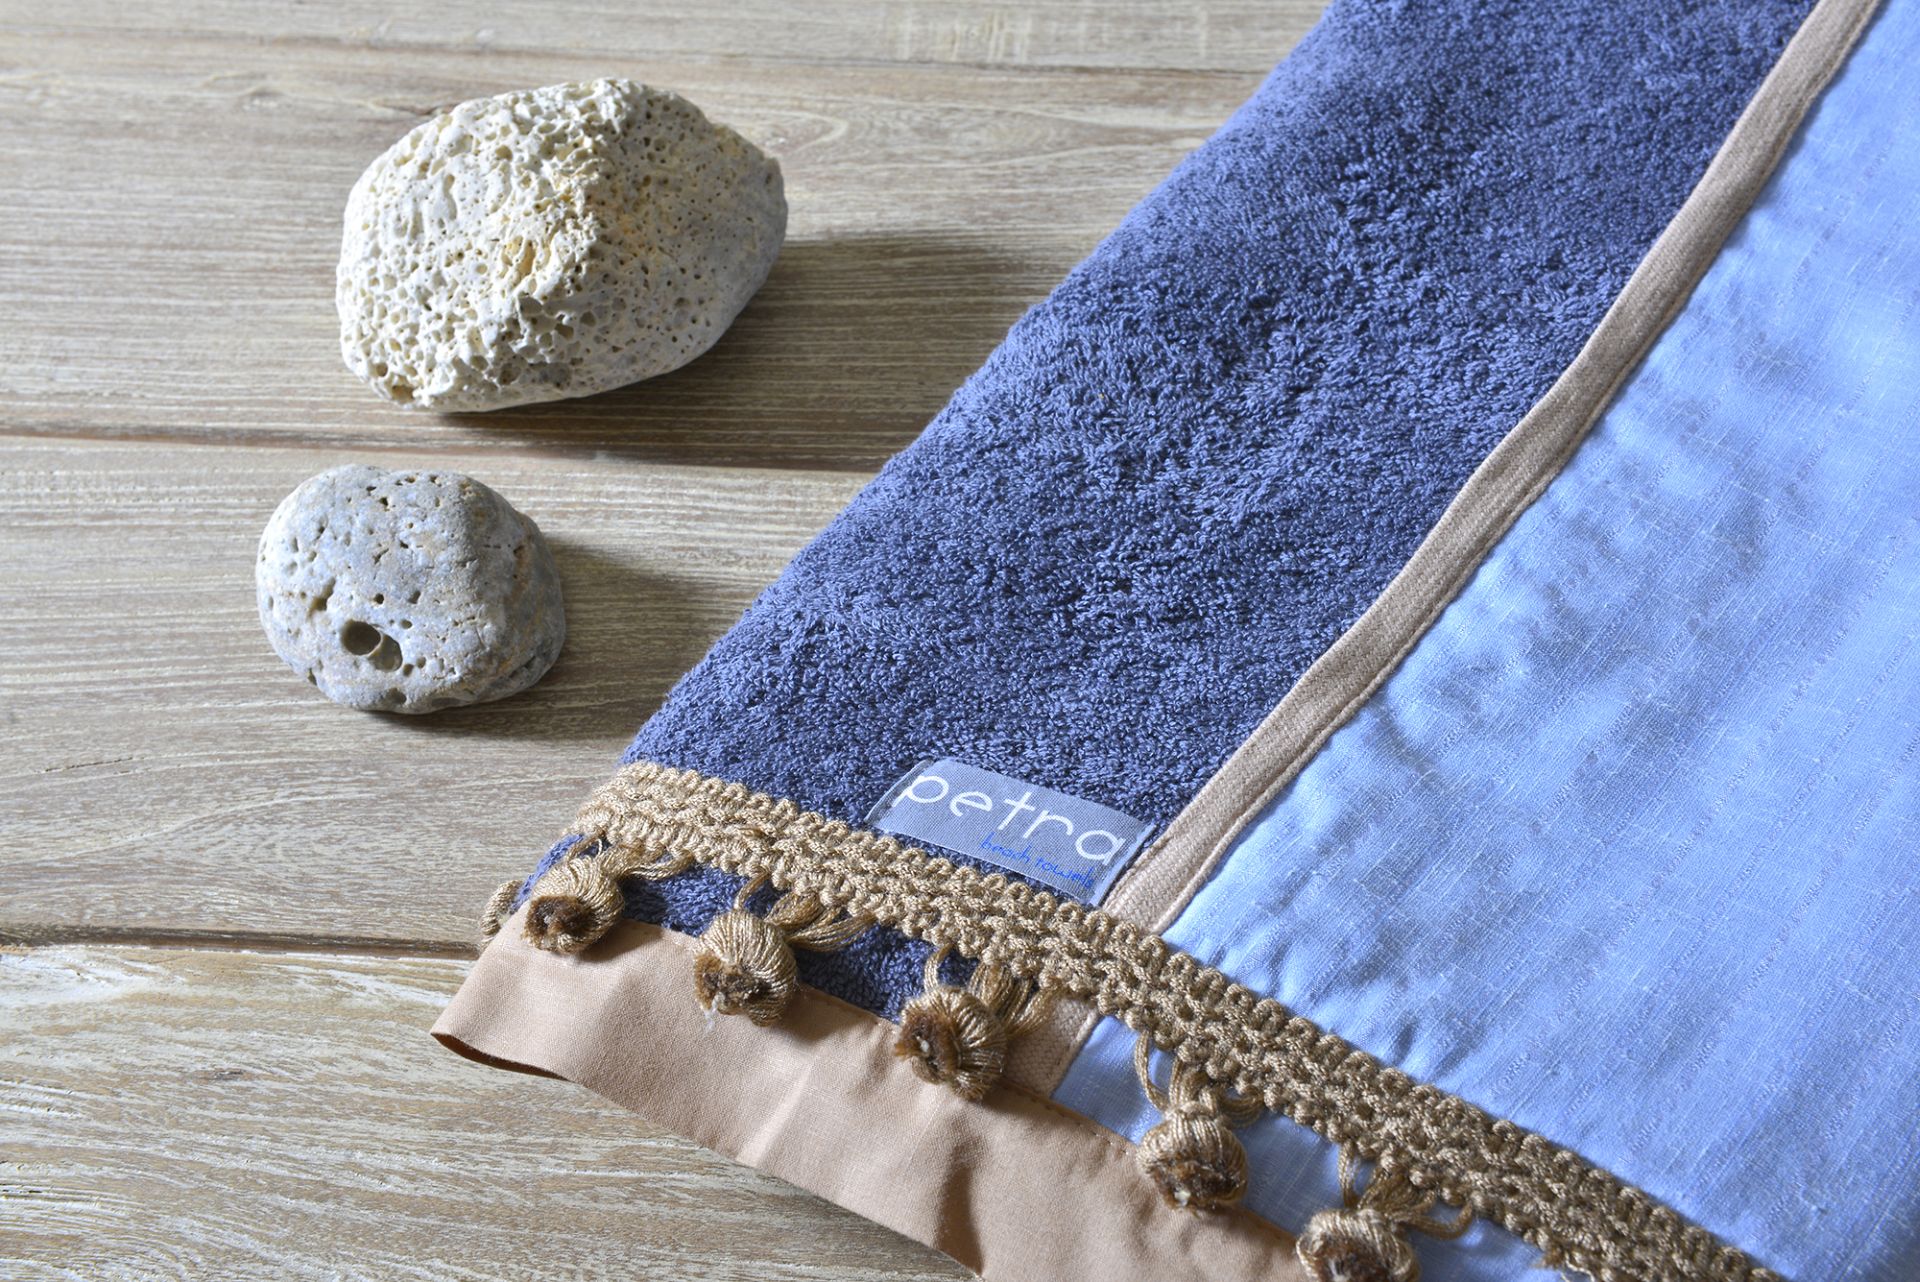 Petra Beach Towels, οι χειροποίητες πετσέτες θαλάσσης που κάνουν θραύση αυτό το καλοκαίρι